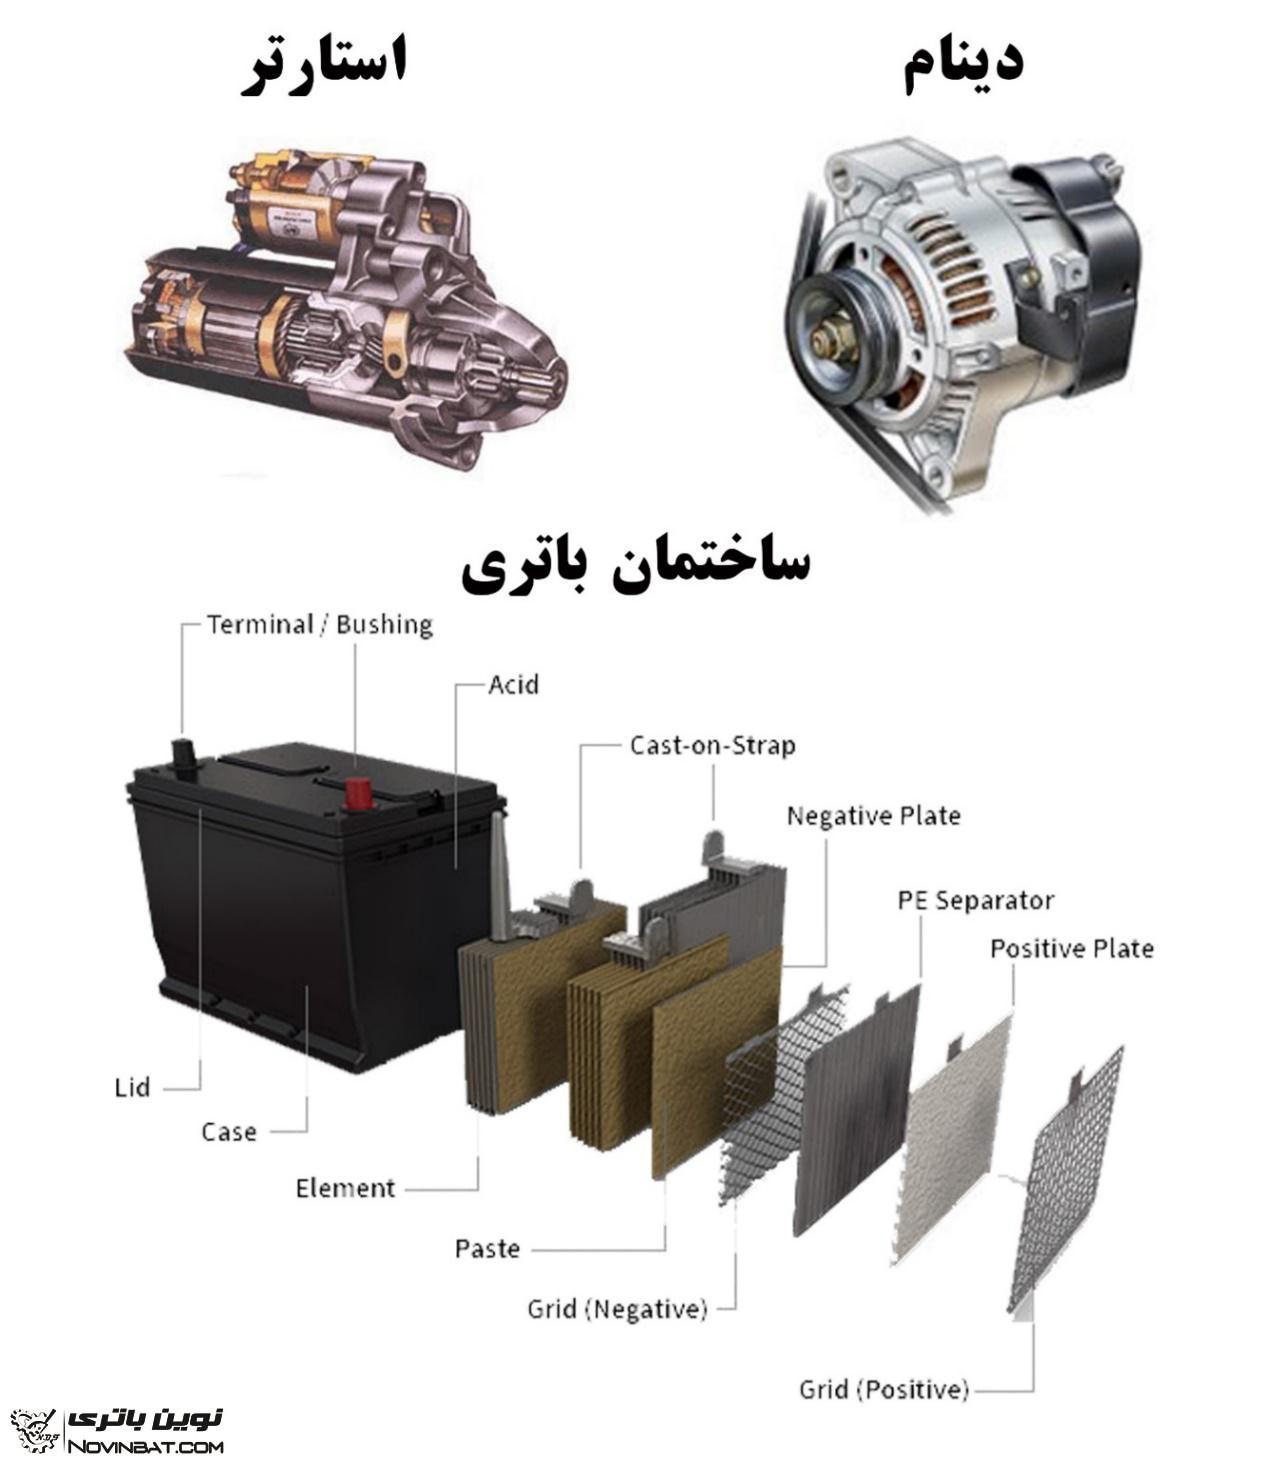 جزوه آموزشی اتحادیه صنف باتری سازان مشهد و حومه